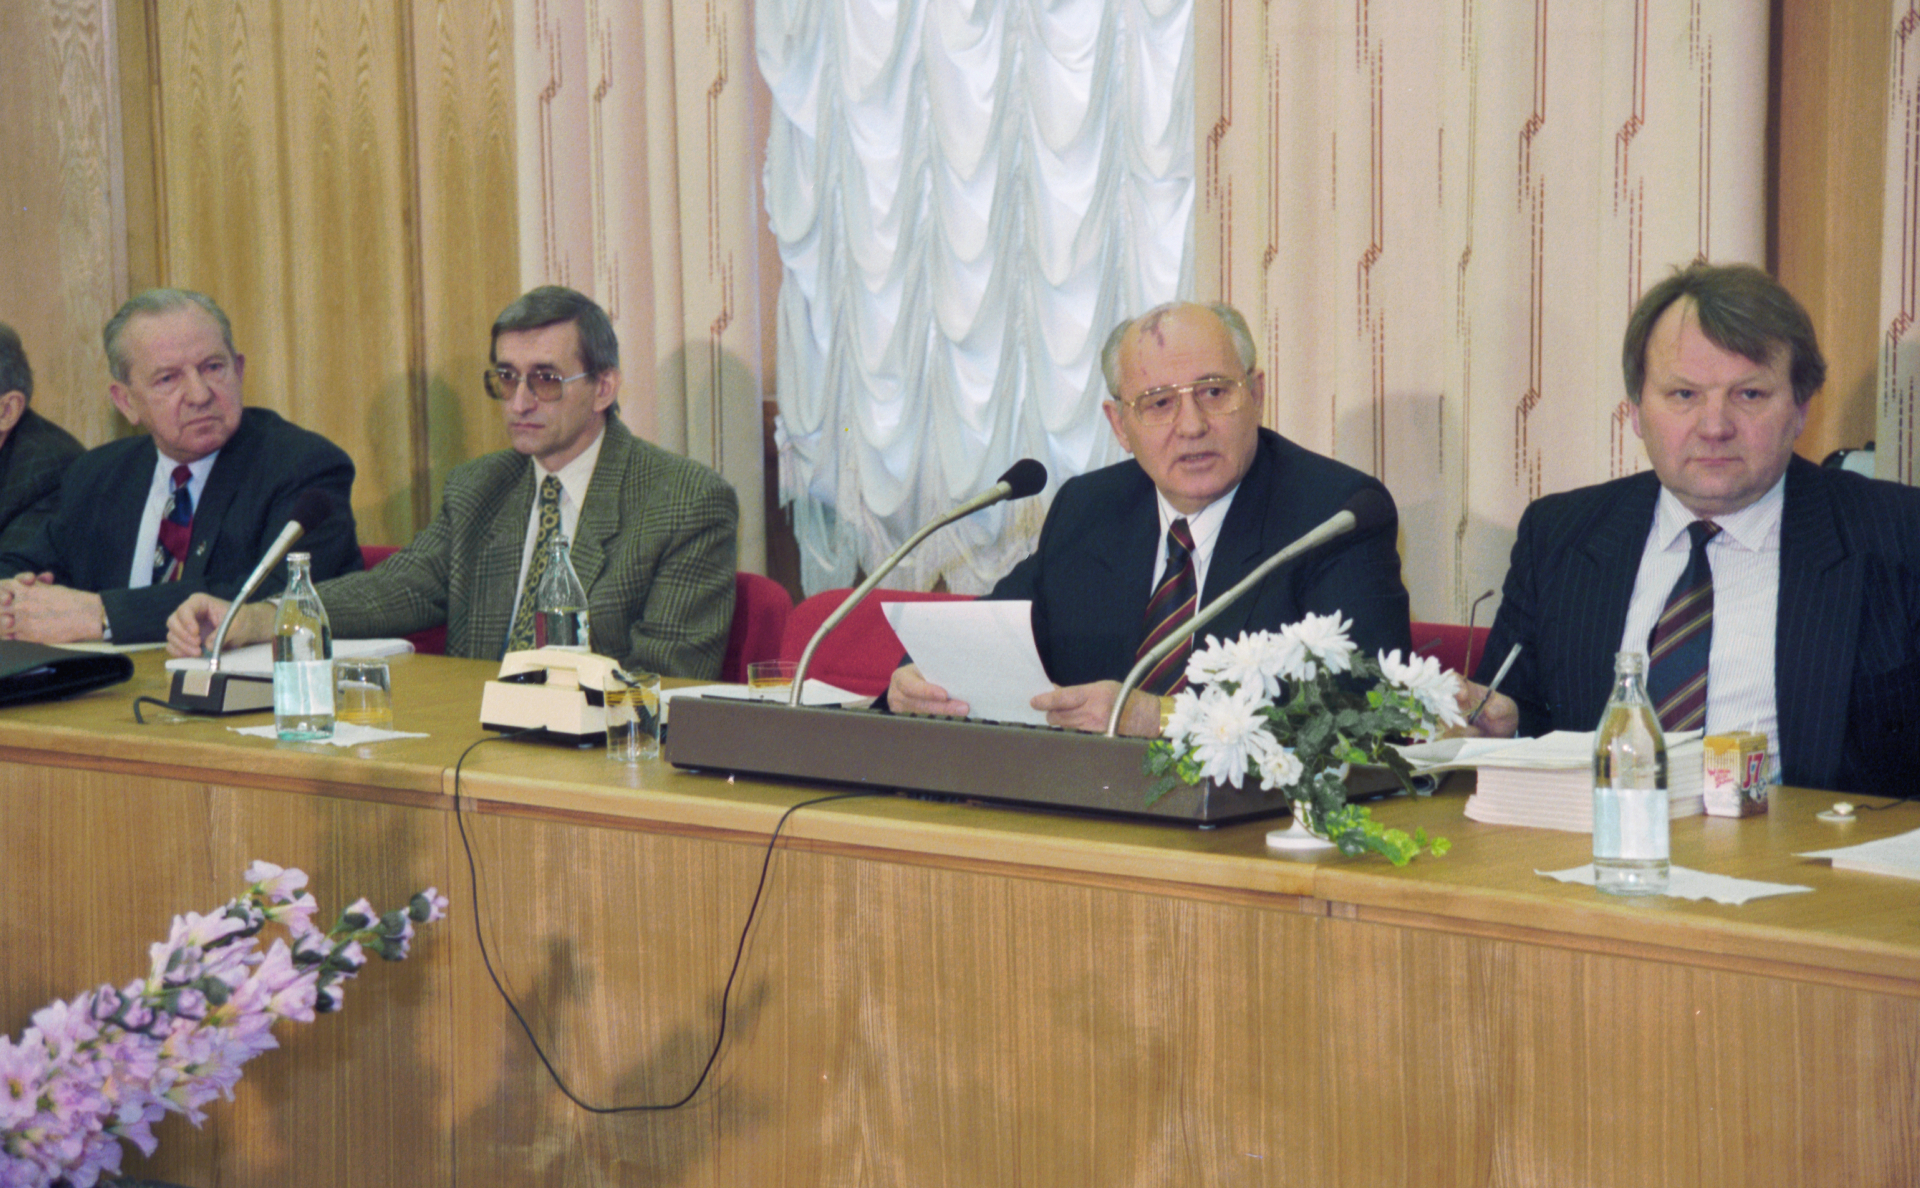 Михаил Горбачев (второй справа) на пресс-конференции ​&laquo;Перестройка, замысел, воплощение, уроки&raquo;. Апрель 1995 года